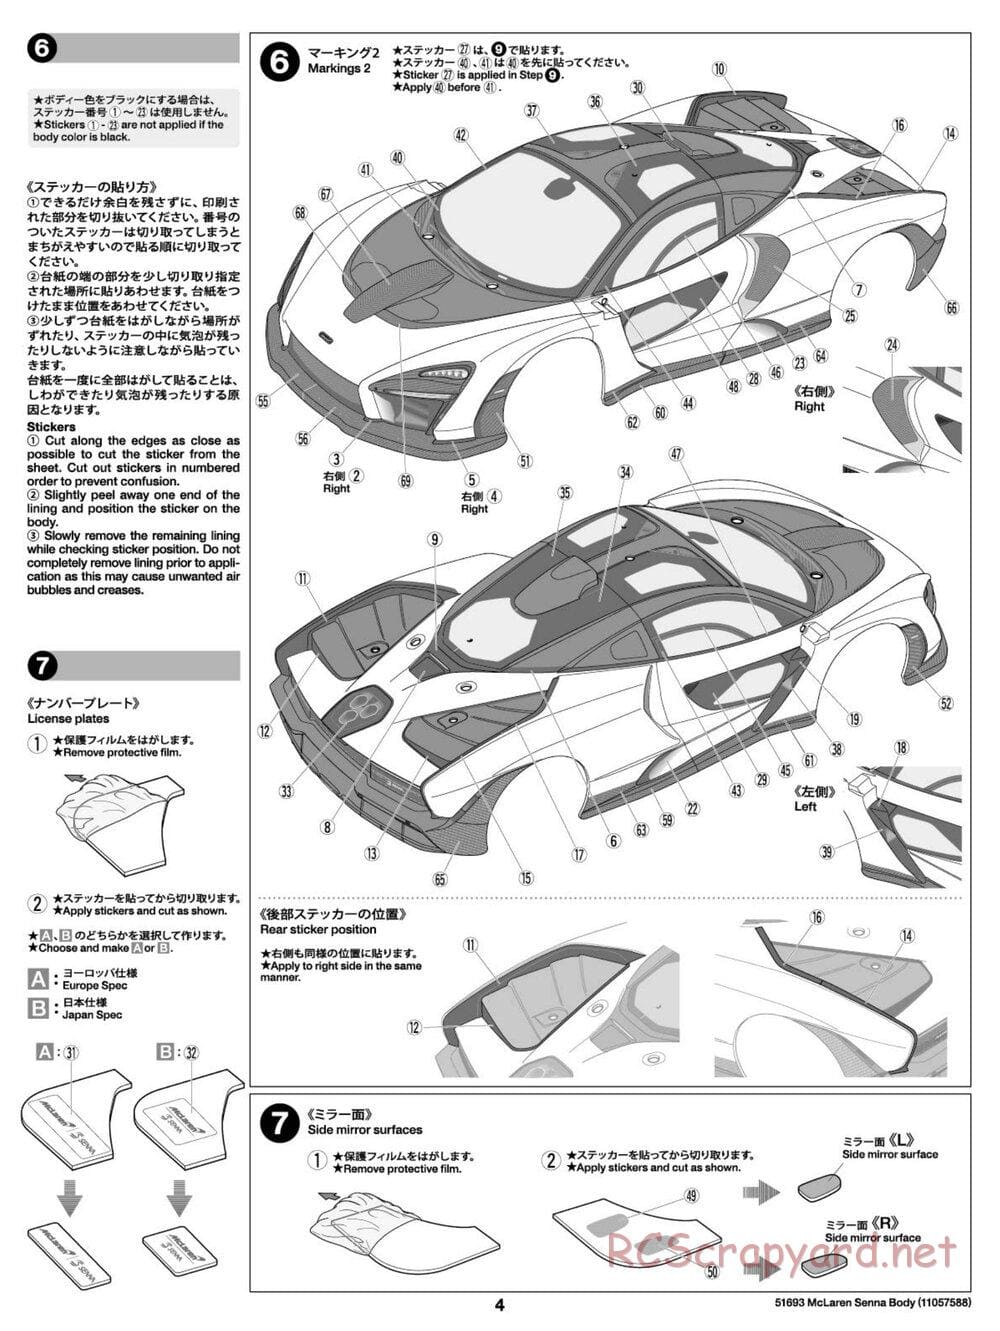 Tamiya - McLaren Senna - TT-02 Chassis - Body Manual - Page 4